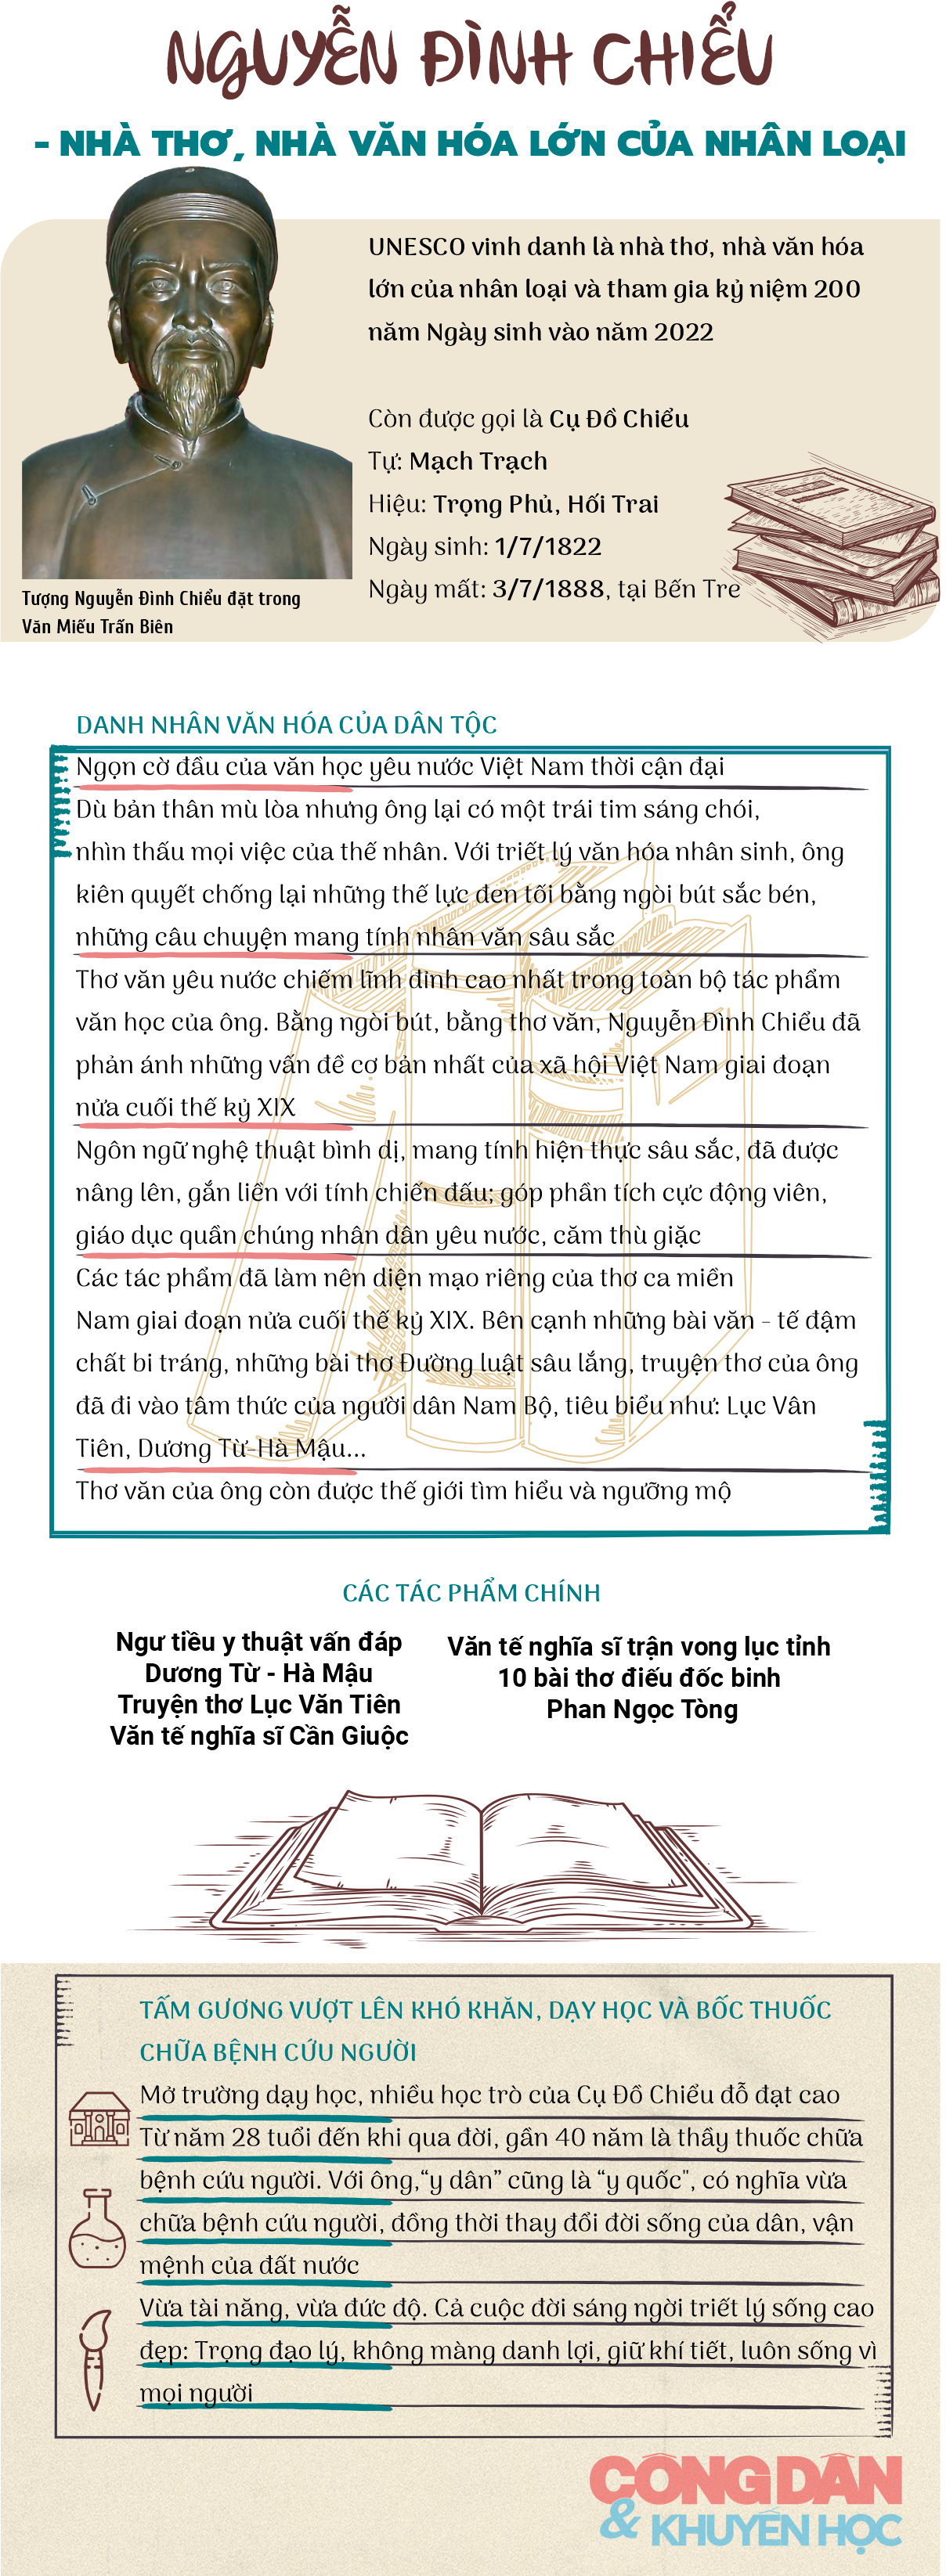 [Infographic] Nguyễn Đình Chiểu - Nhà thơ, nhà văn hóa lớn của nhân loại - Ảnh 1.